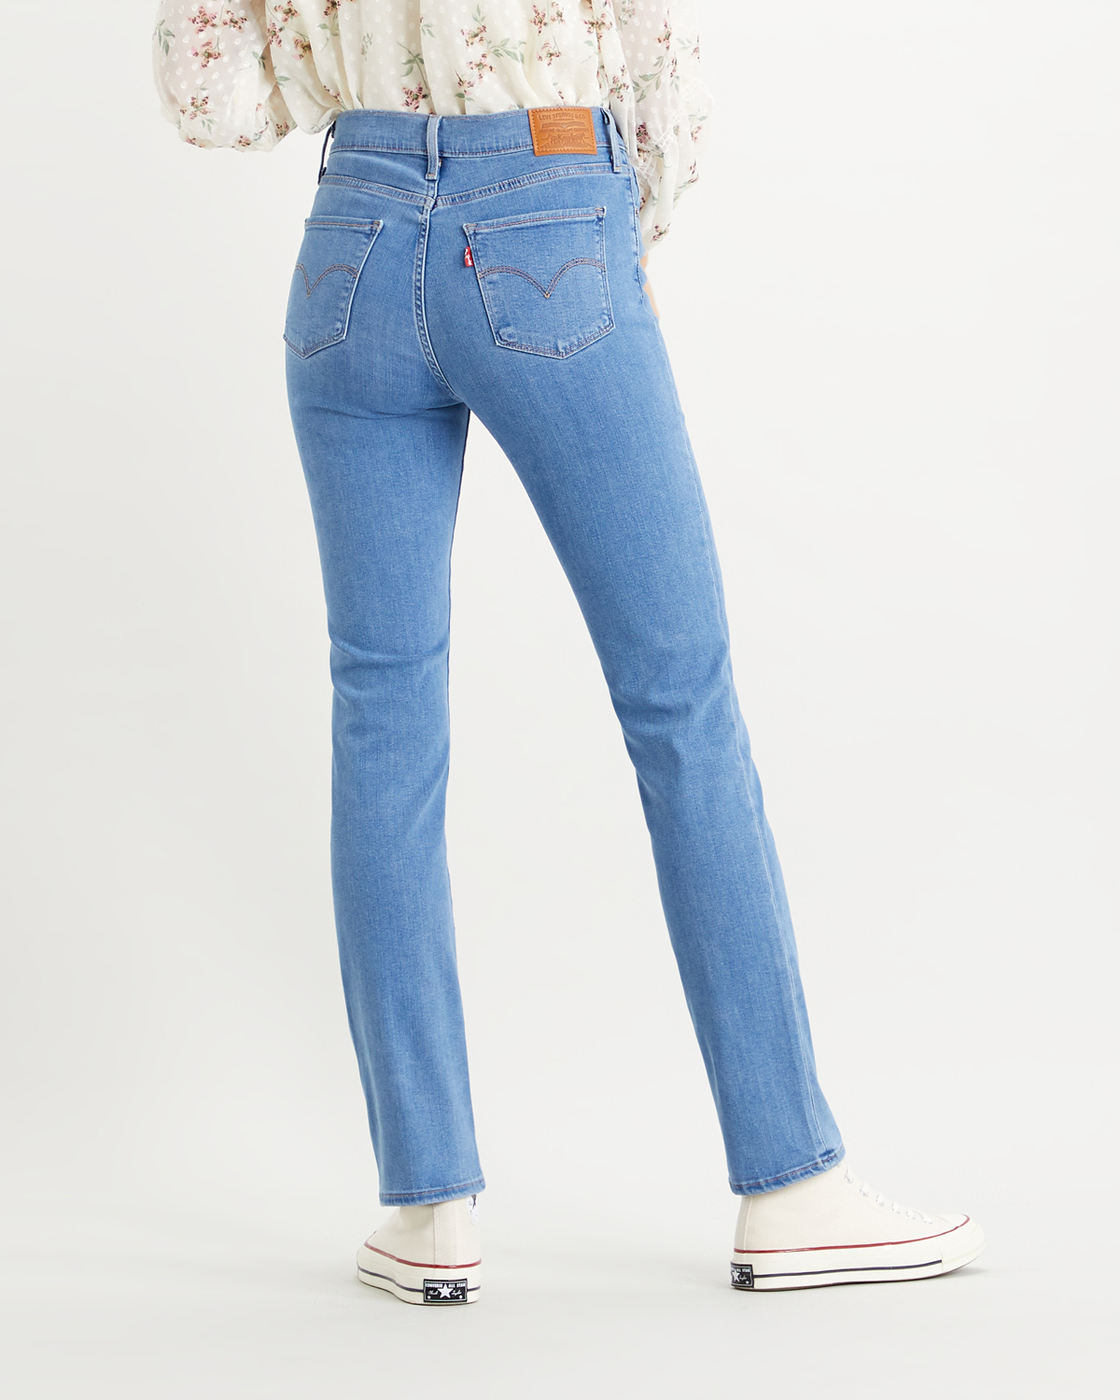 Женские джинсы левис модели